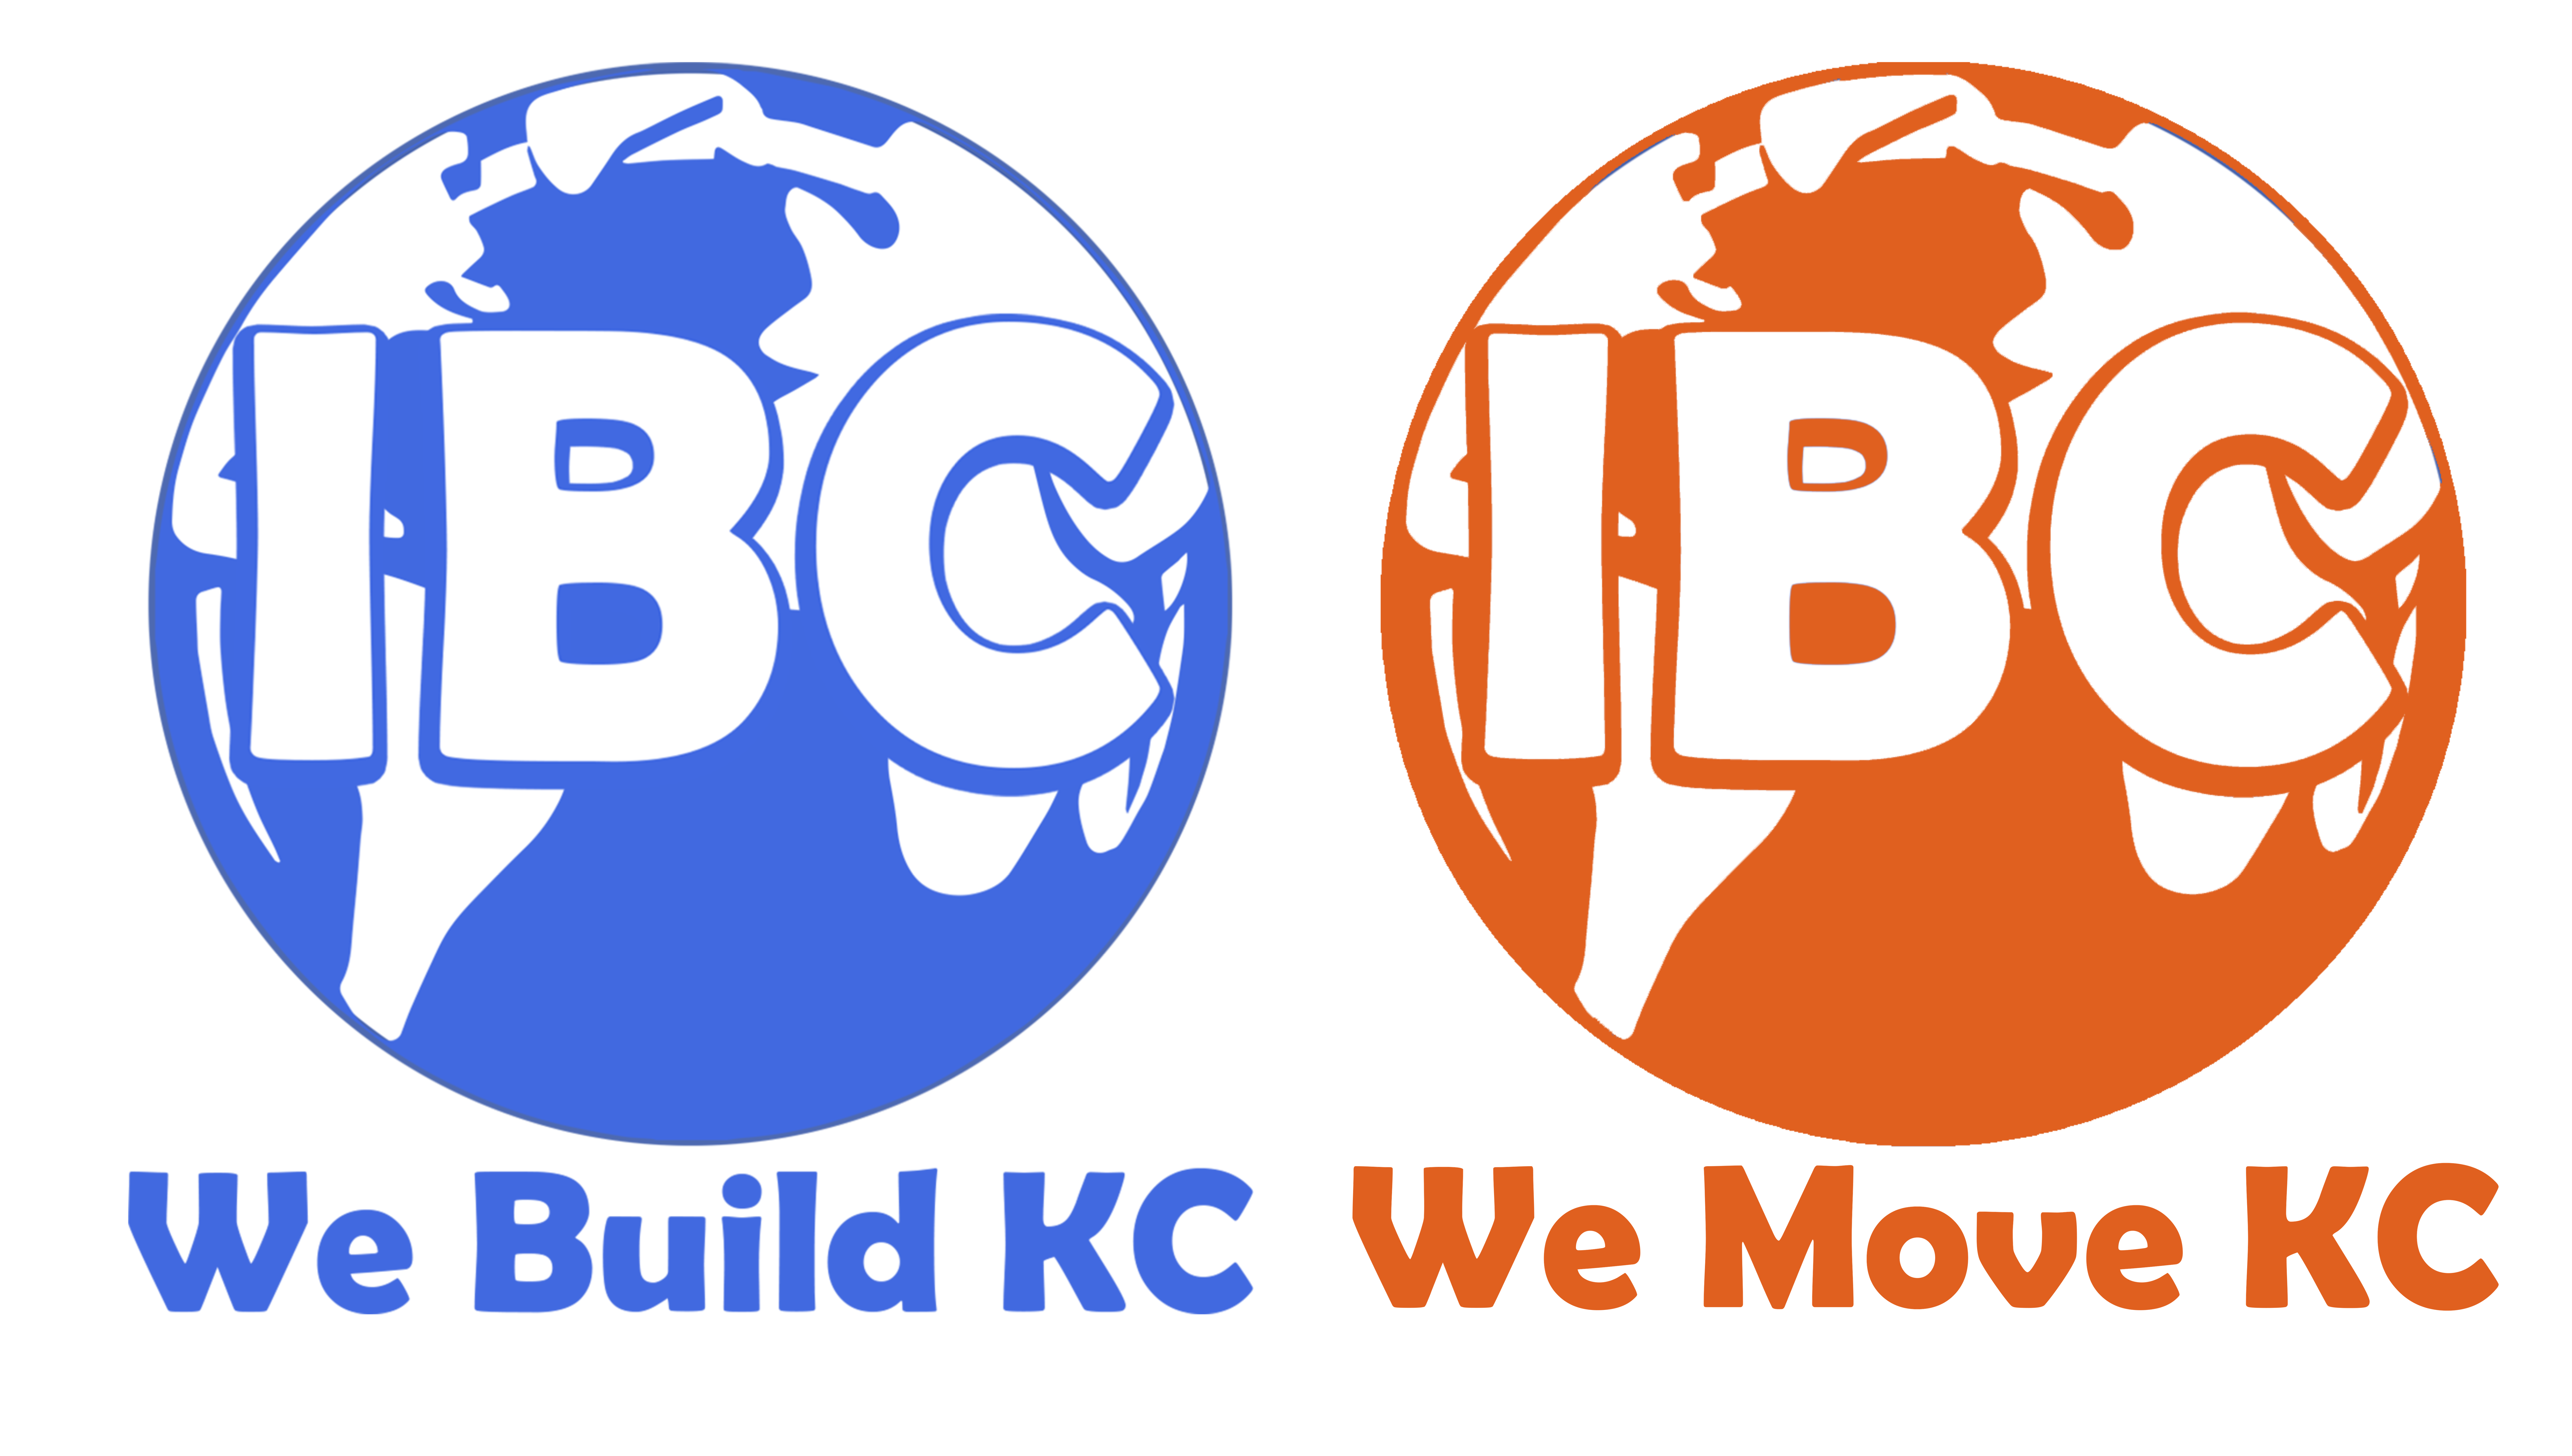 IBC logos